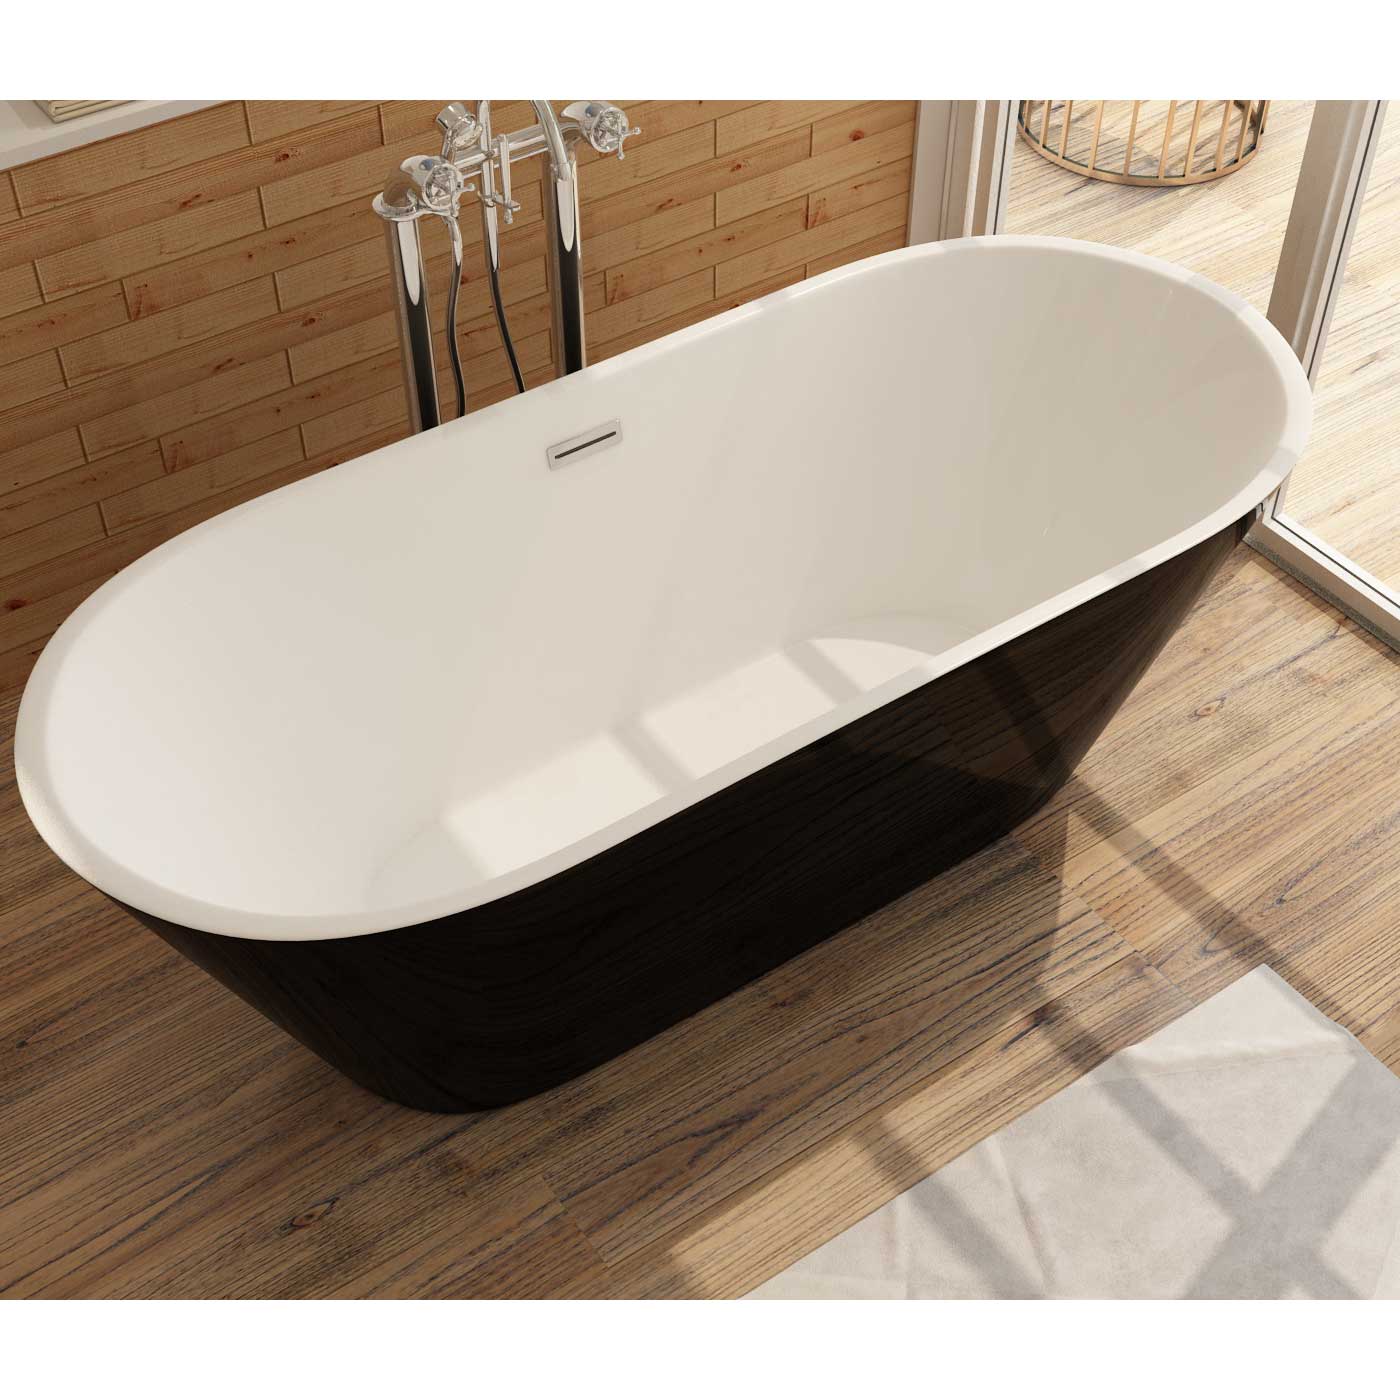 Freistehende Badewanne aus Sanitäracryl Lugano Schwarz-Weiß